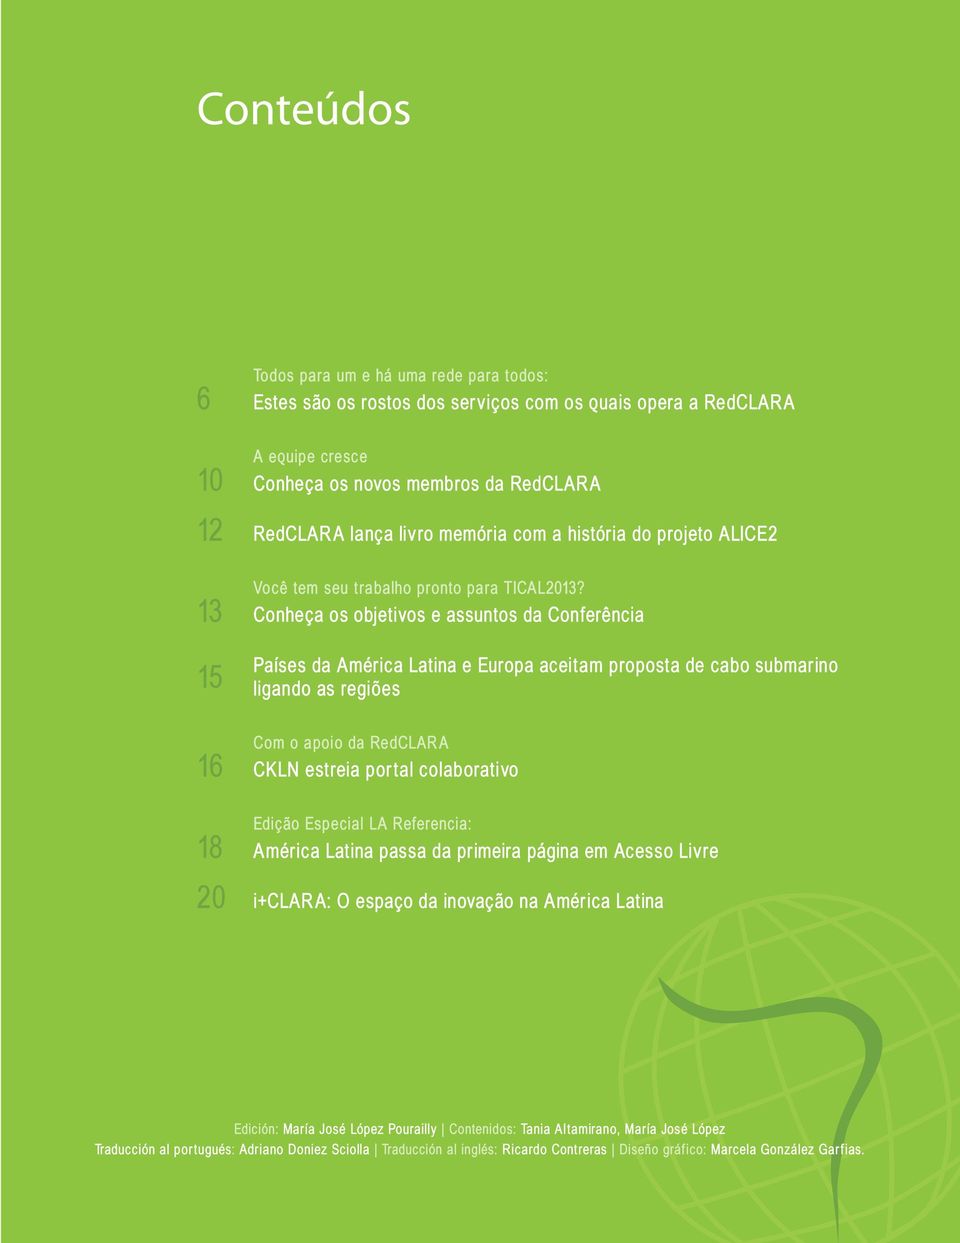 13 Conheça os objetivos e assuntos da Conferência 15 Países da América Latina e Europa aceitam proposta de cabo submarino ligando as regiões Com o apoio da RedCLARA 16 CKLN estreia portal